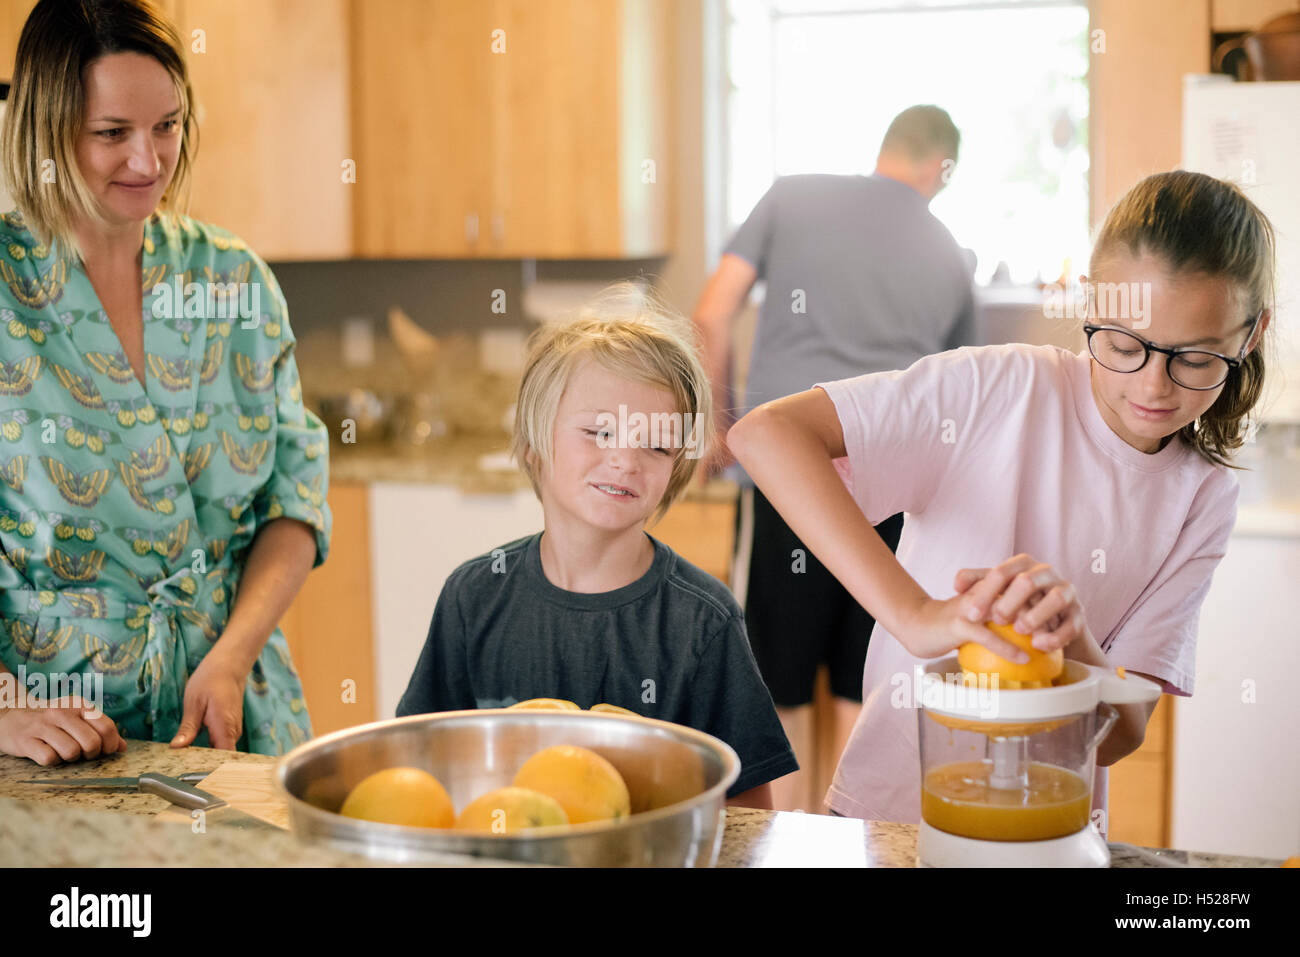 Famille préparer le petit-déjeuner dans une cuisine, girl squeezing oranges. Banque D'Images